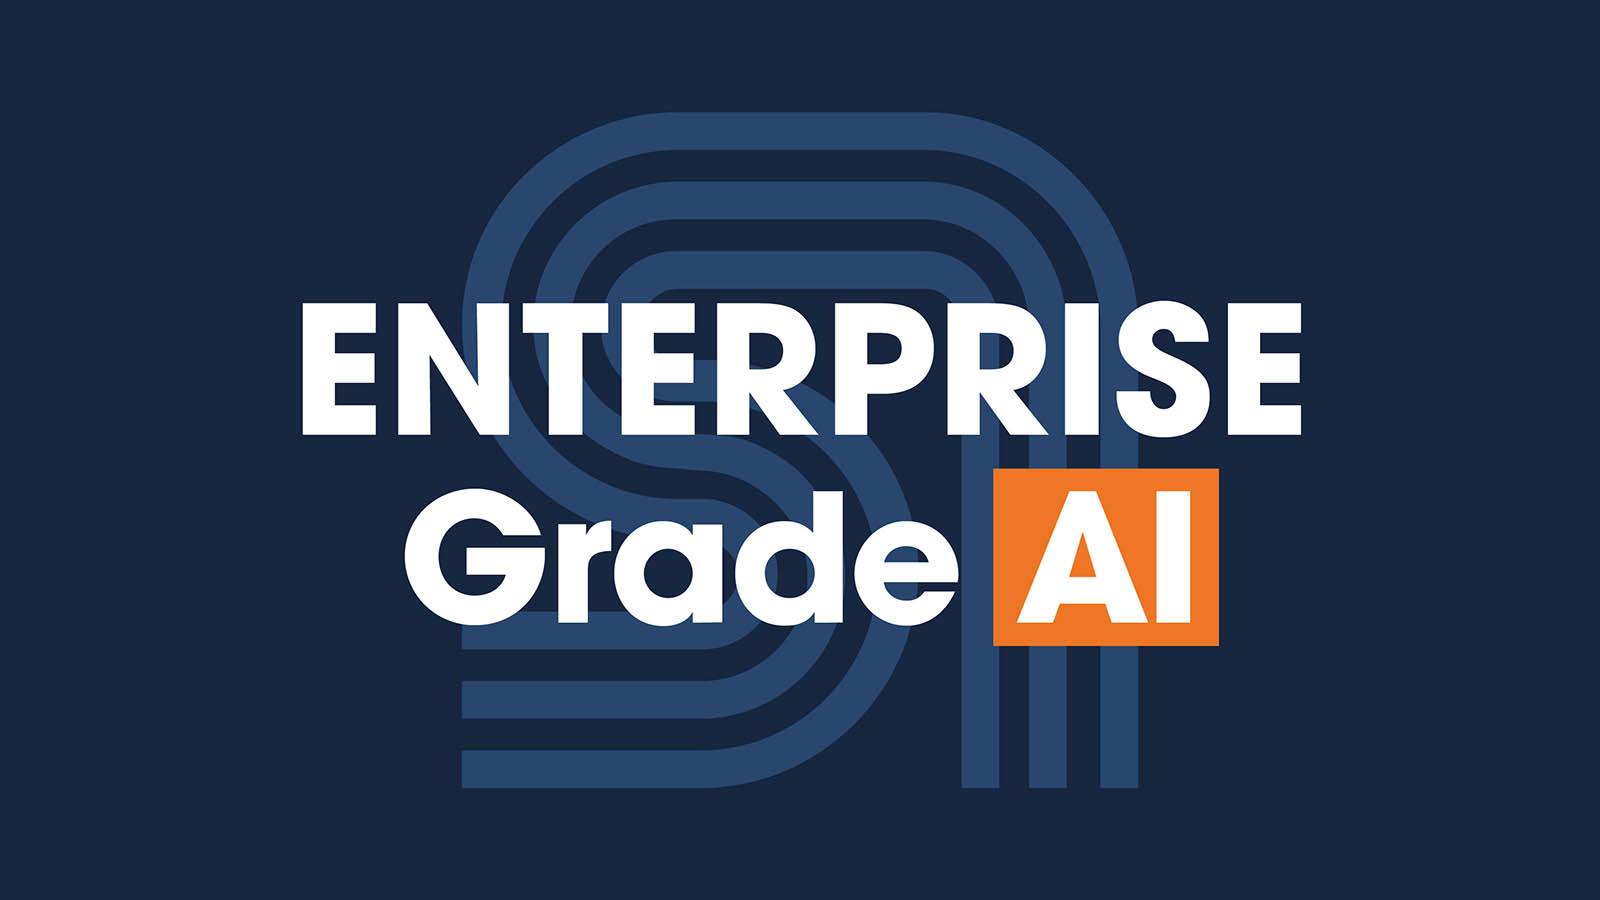 Enterprise-grade AI